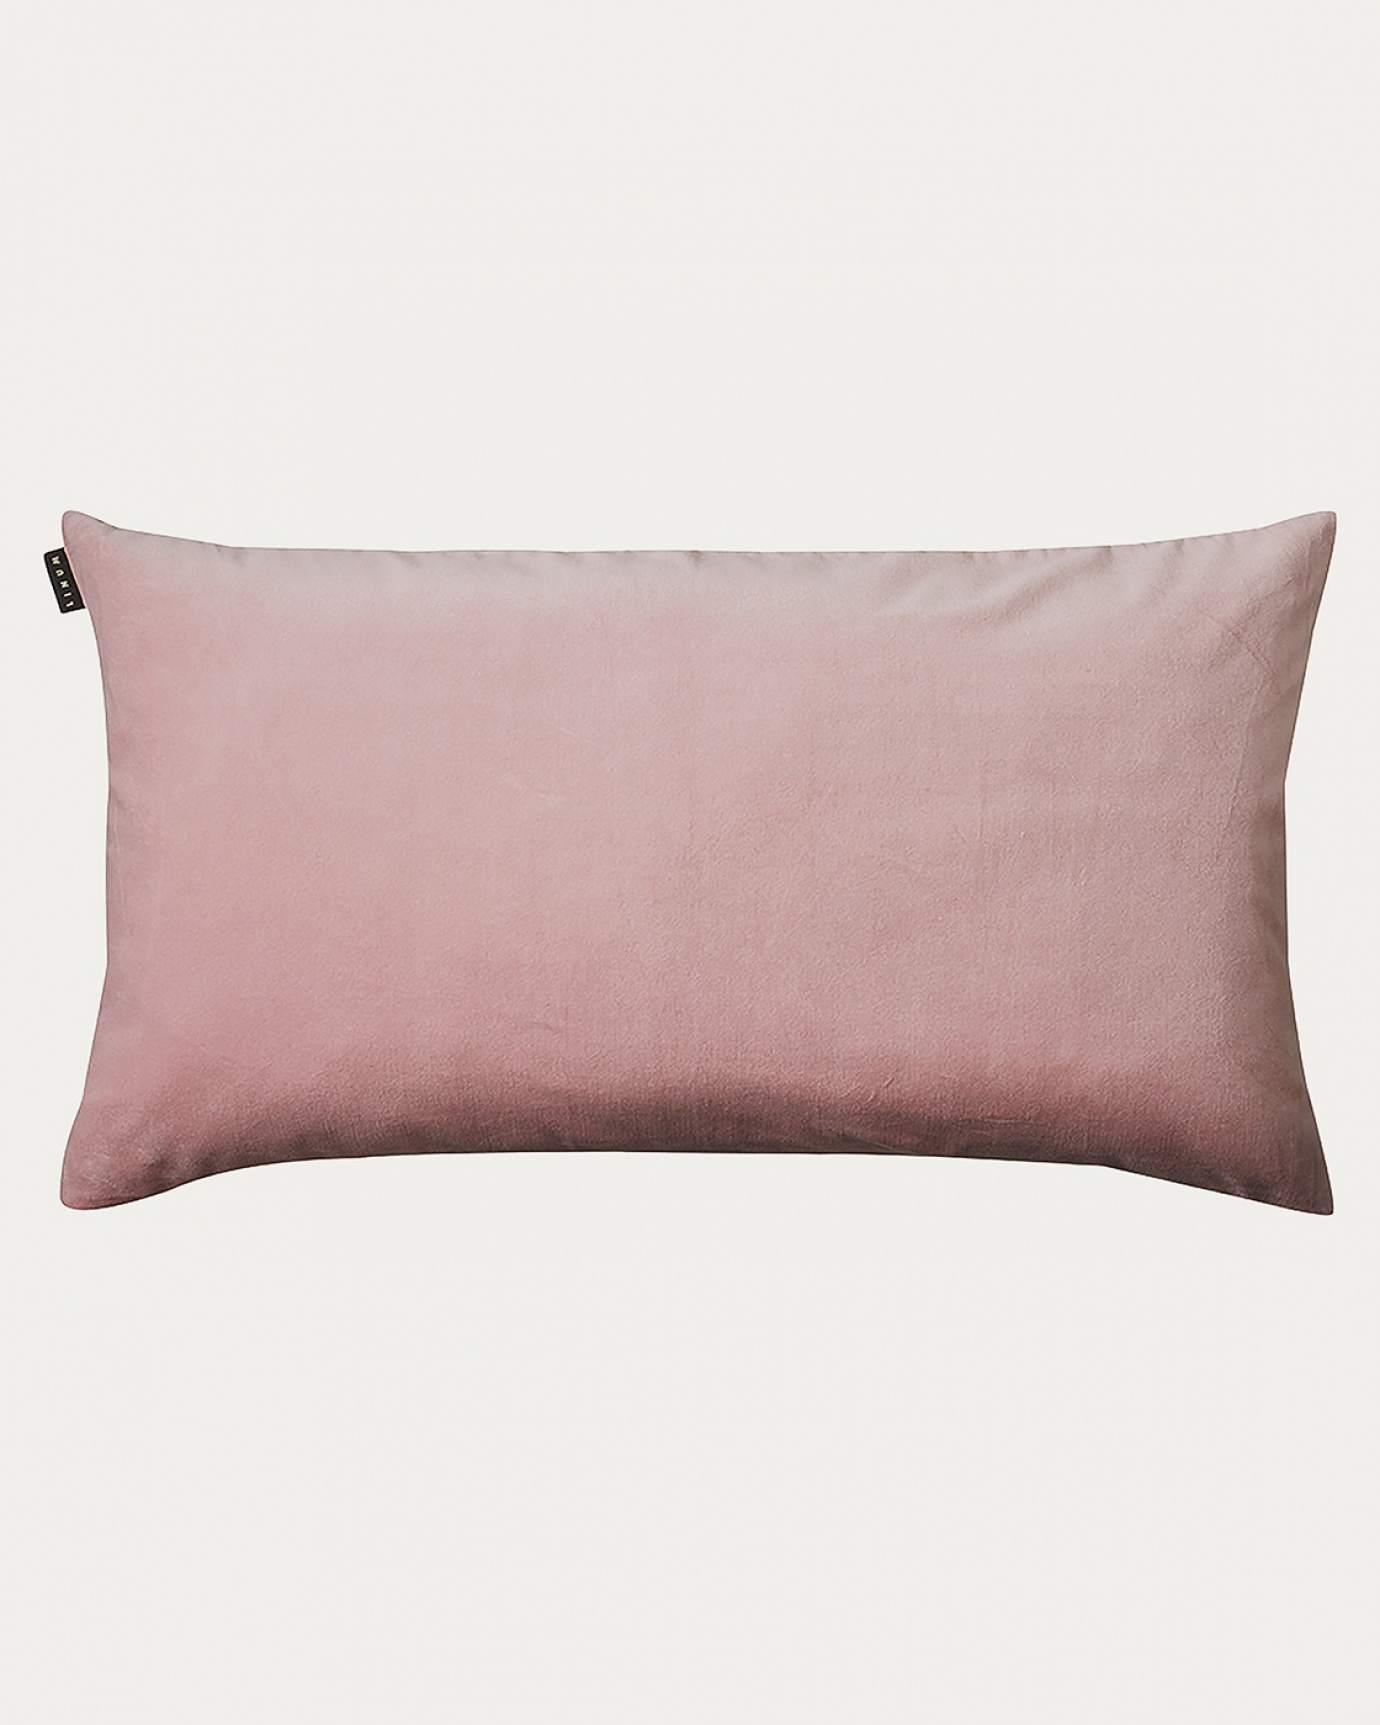 Produktbild dammig rosa PAOLO kuddfodral av mjuk bomullssammet och 100% linne från LINUM DESIGN. Storlek 50x90 cm.